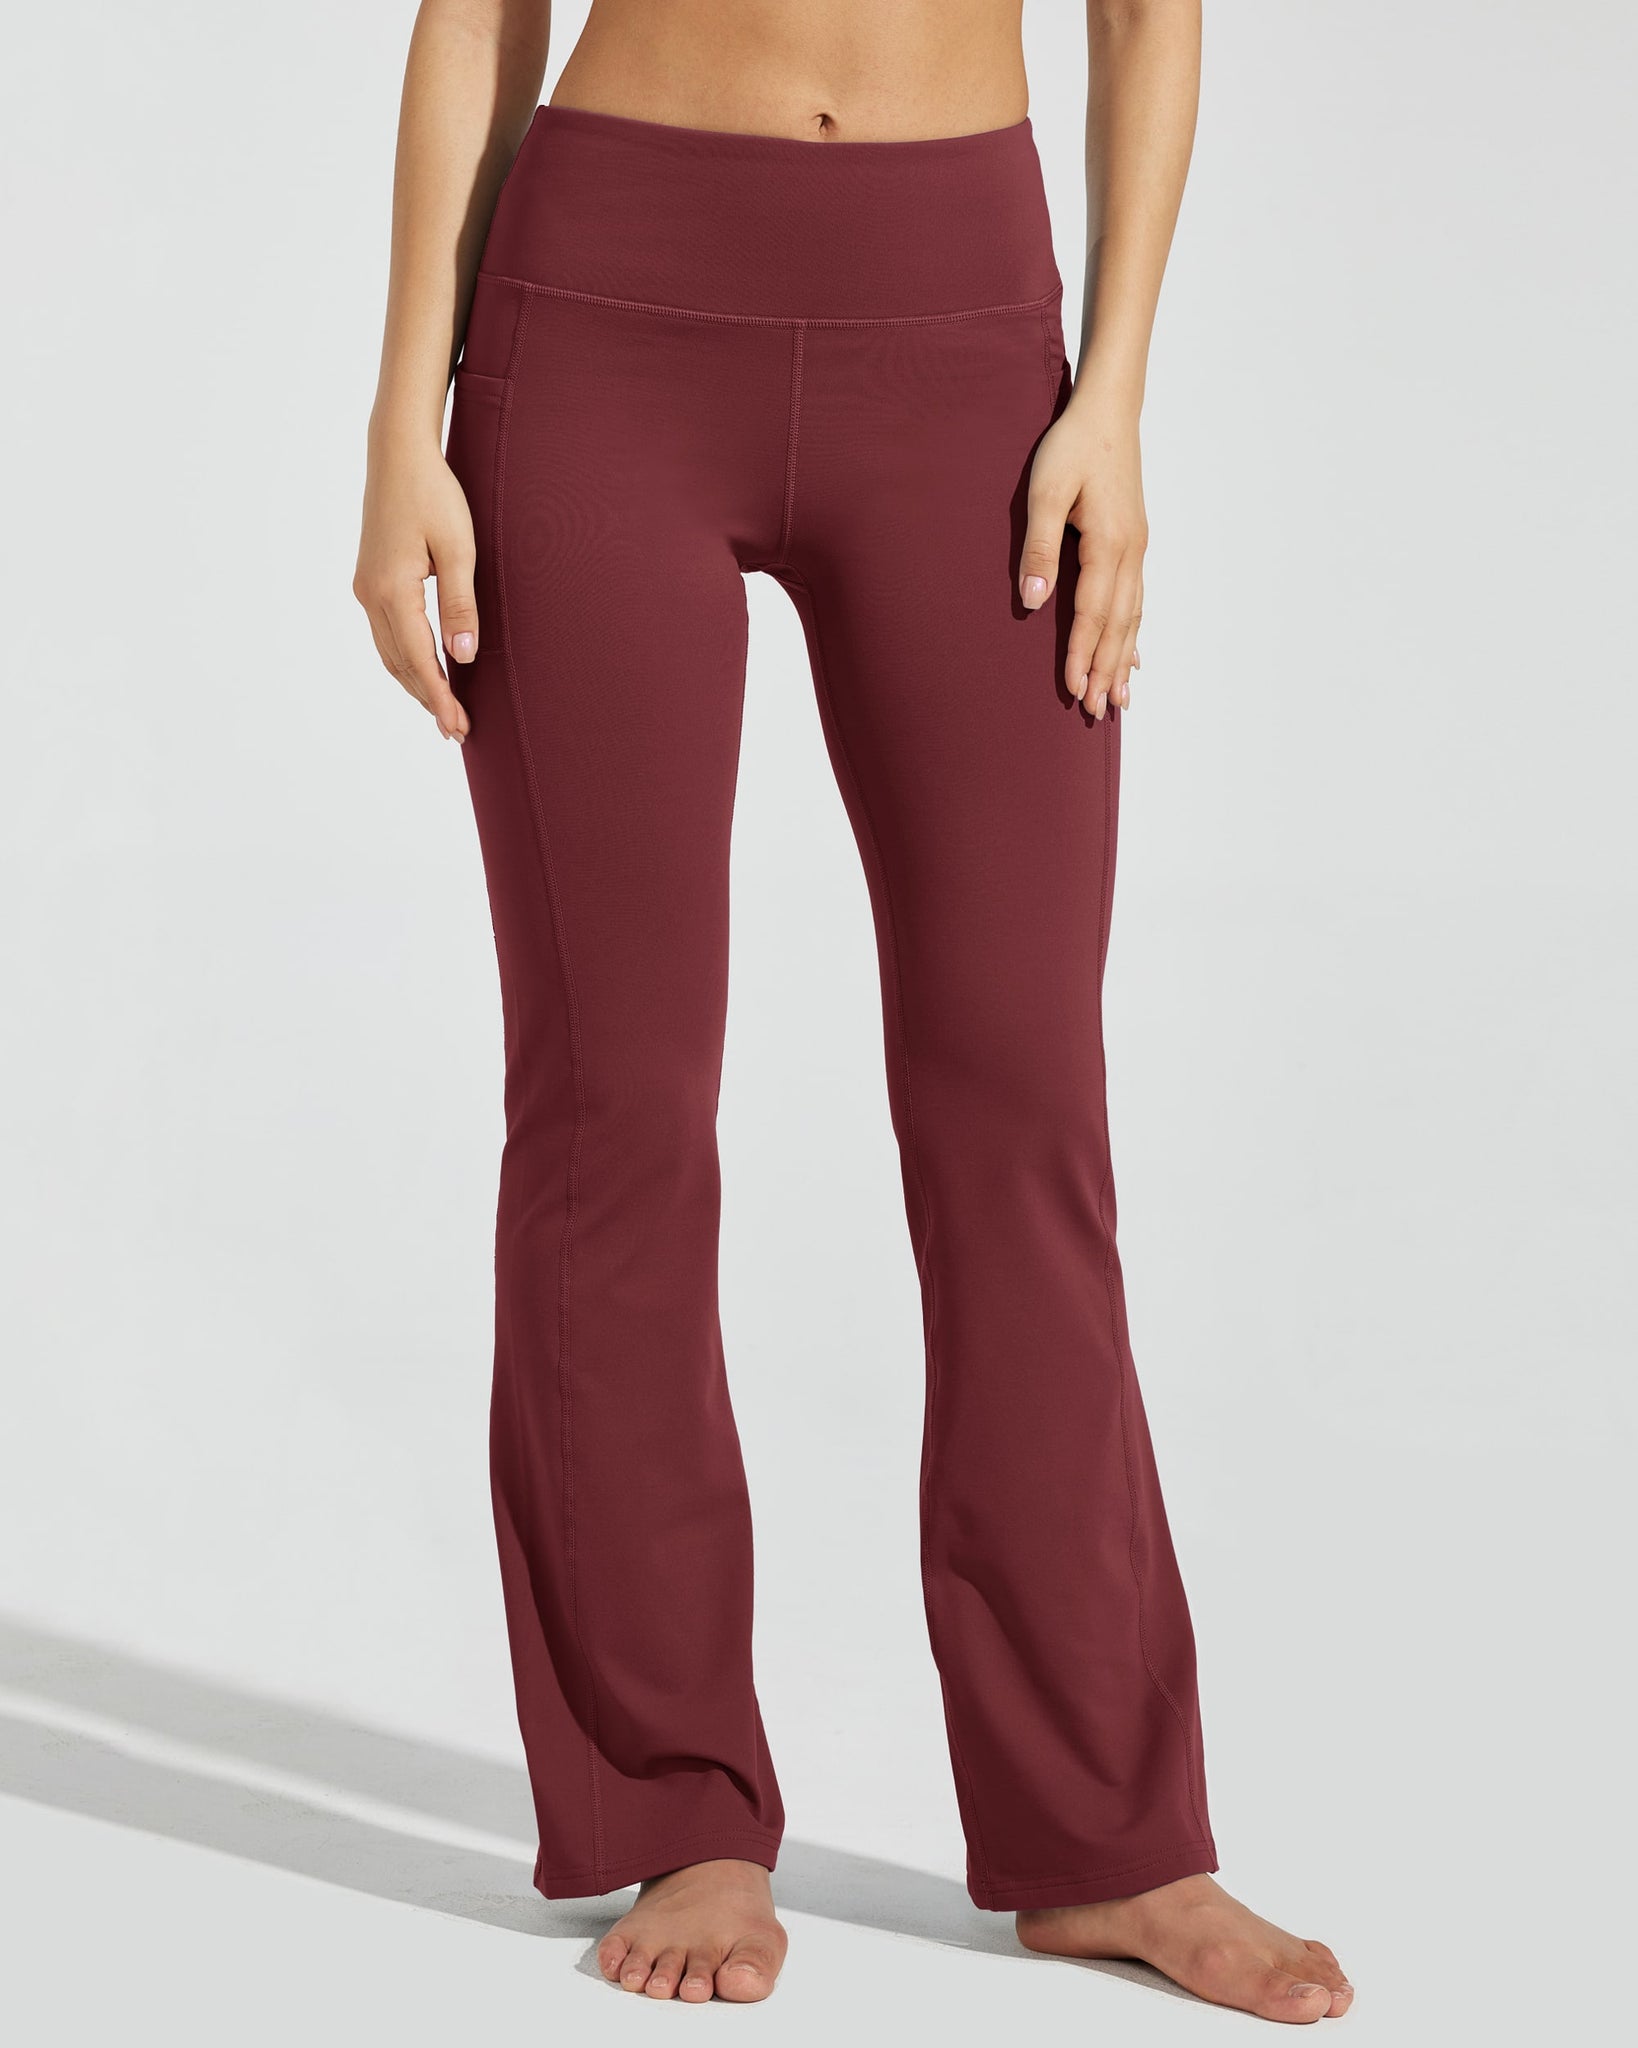 Women's Fleece Lined Bootcut Yoga Pants_WineRed_model1